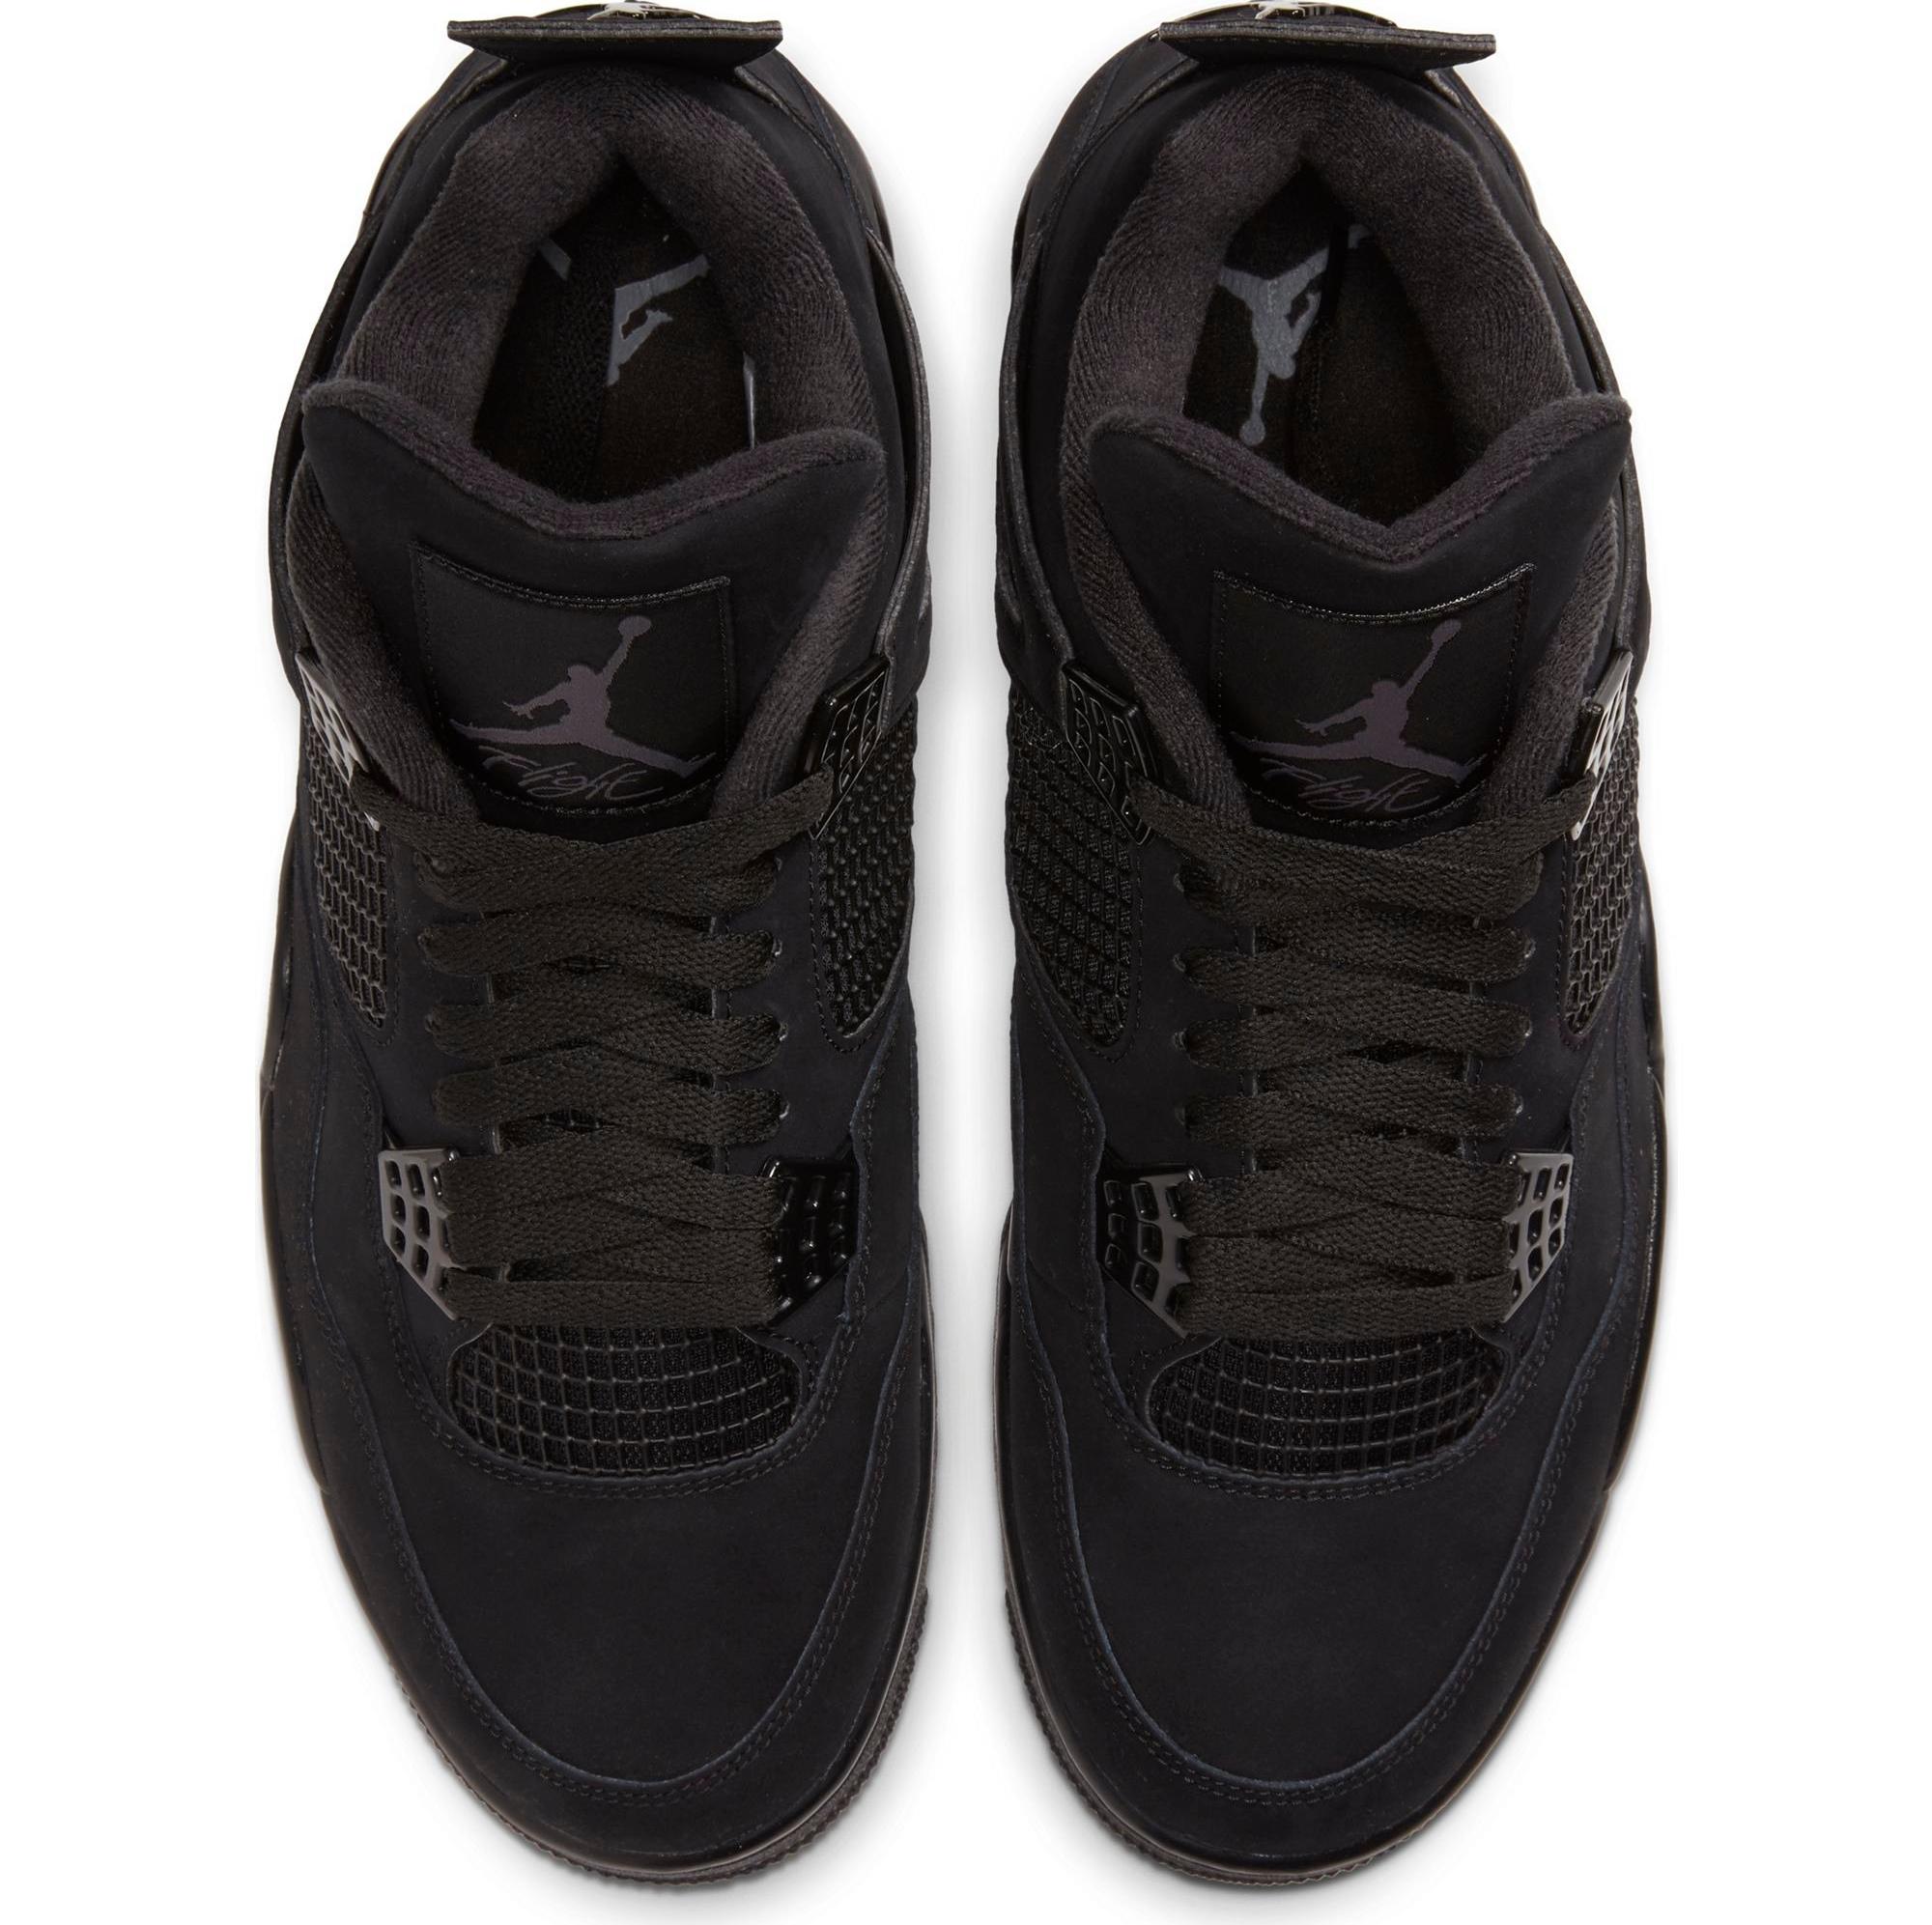 Shop Jordan 13 Black Cat - size 7y Online & In Store - Hype24/7